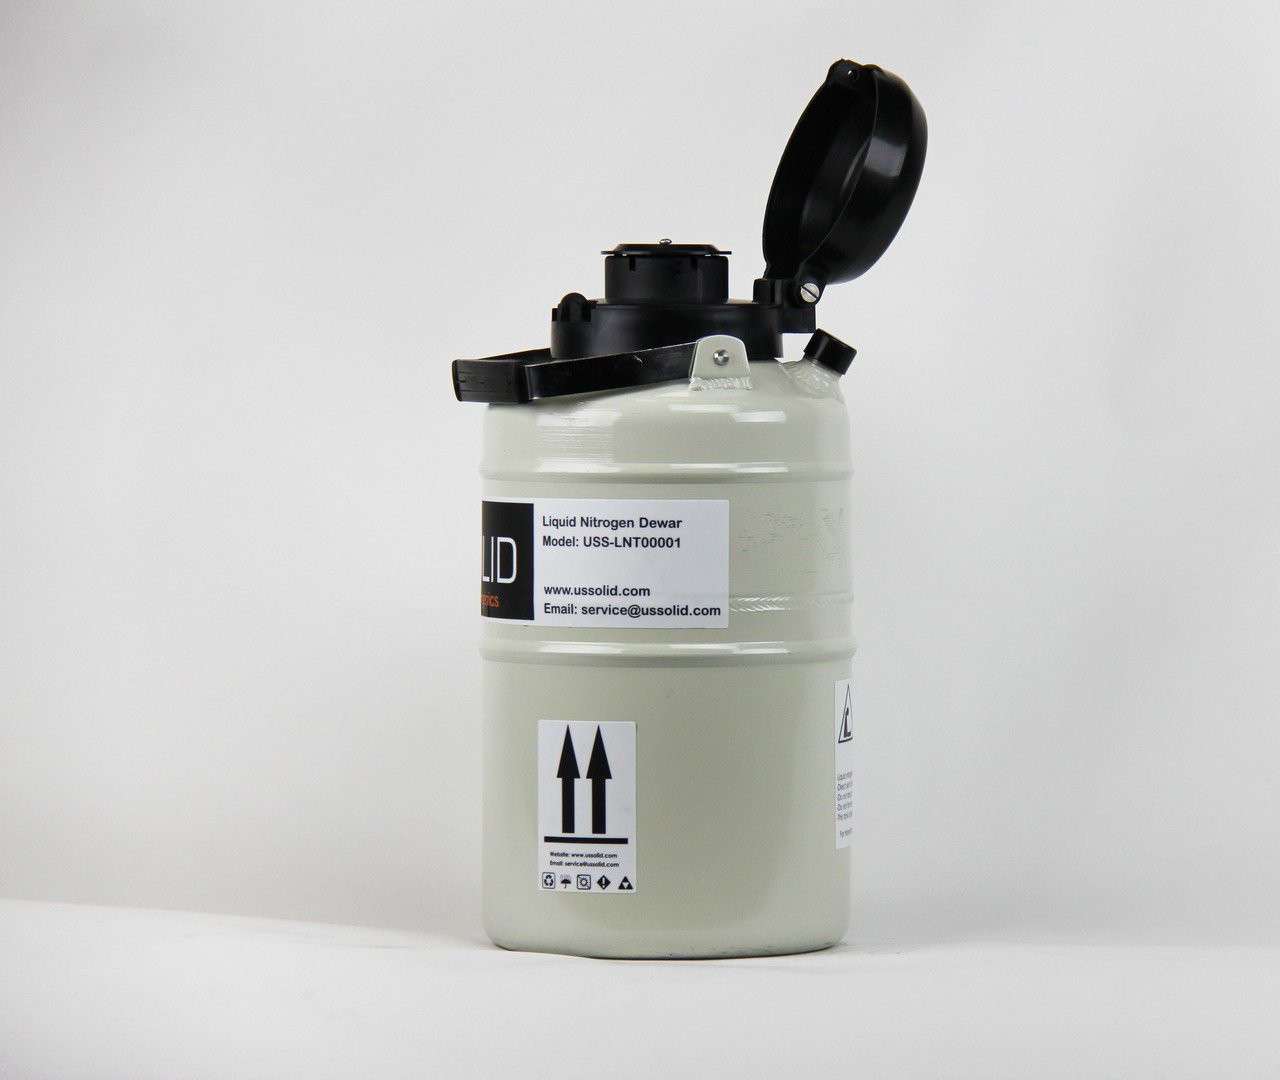 File:Liquid nitrogen tank.JPG - Wikipedia